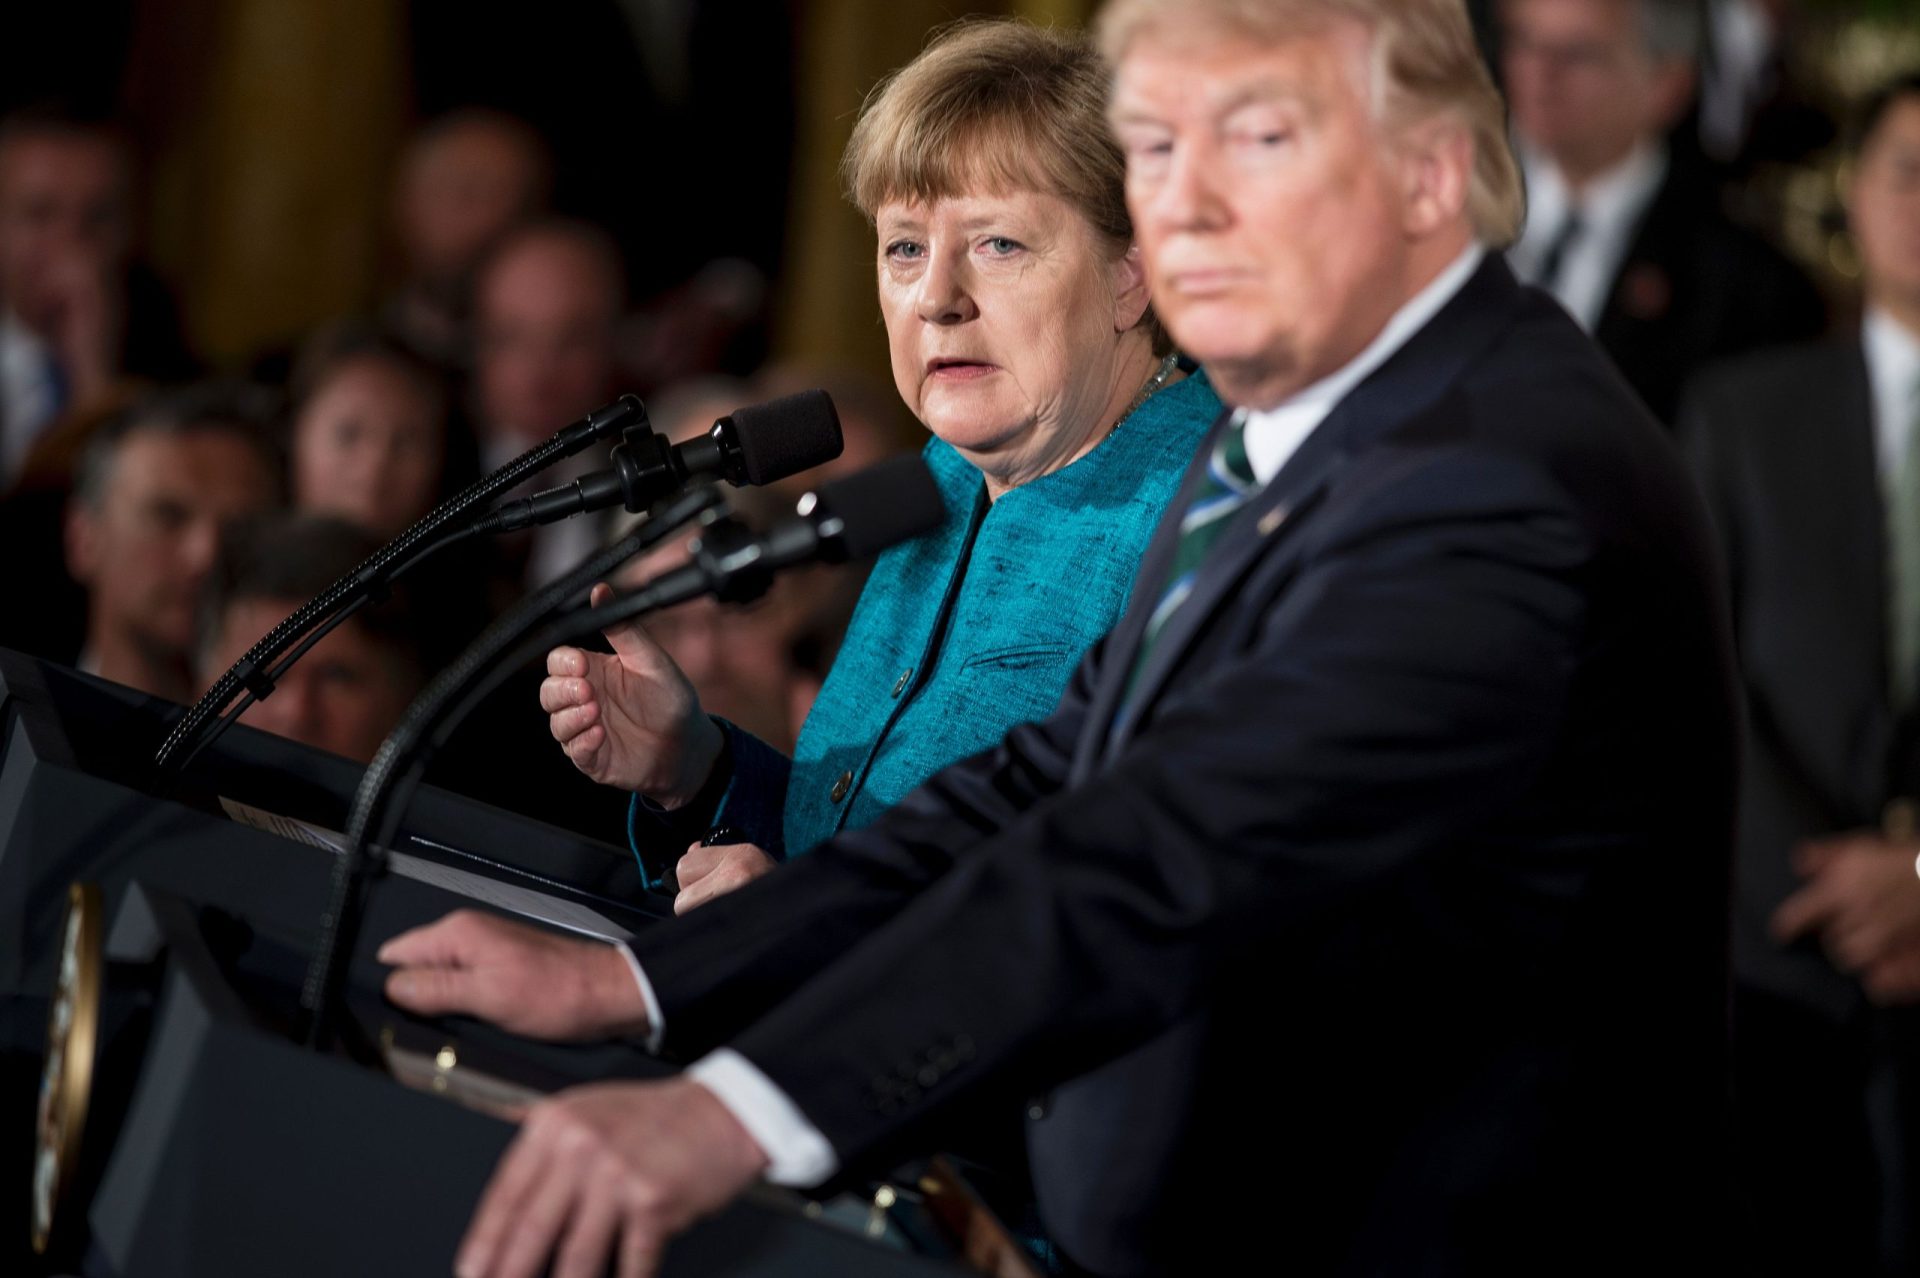 Donald Trump não cumprimentou Angela Merkel. Terá sido propositado? [vídeo]